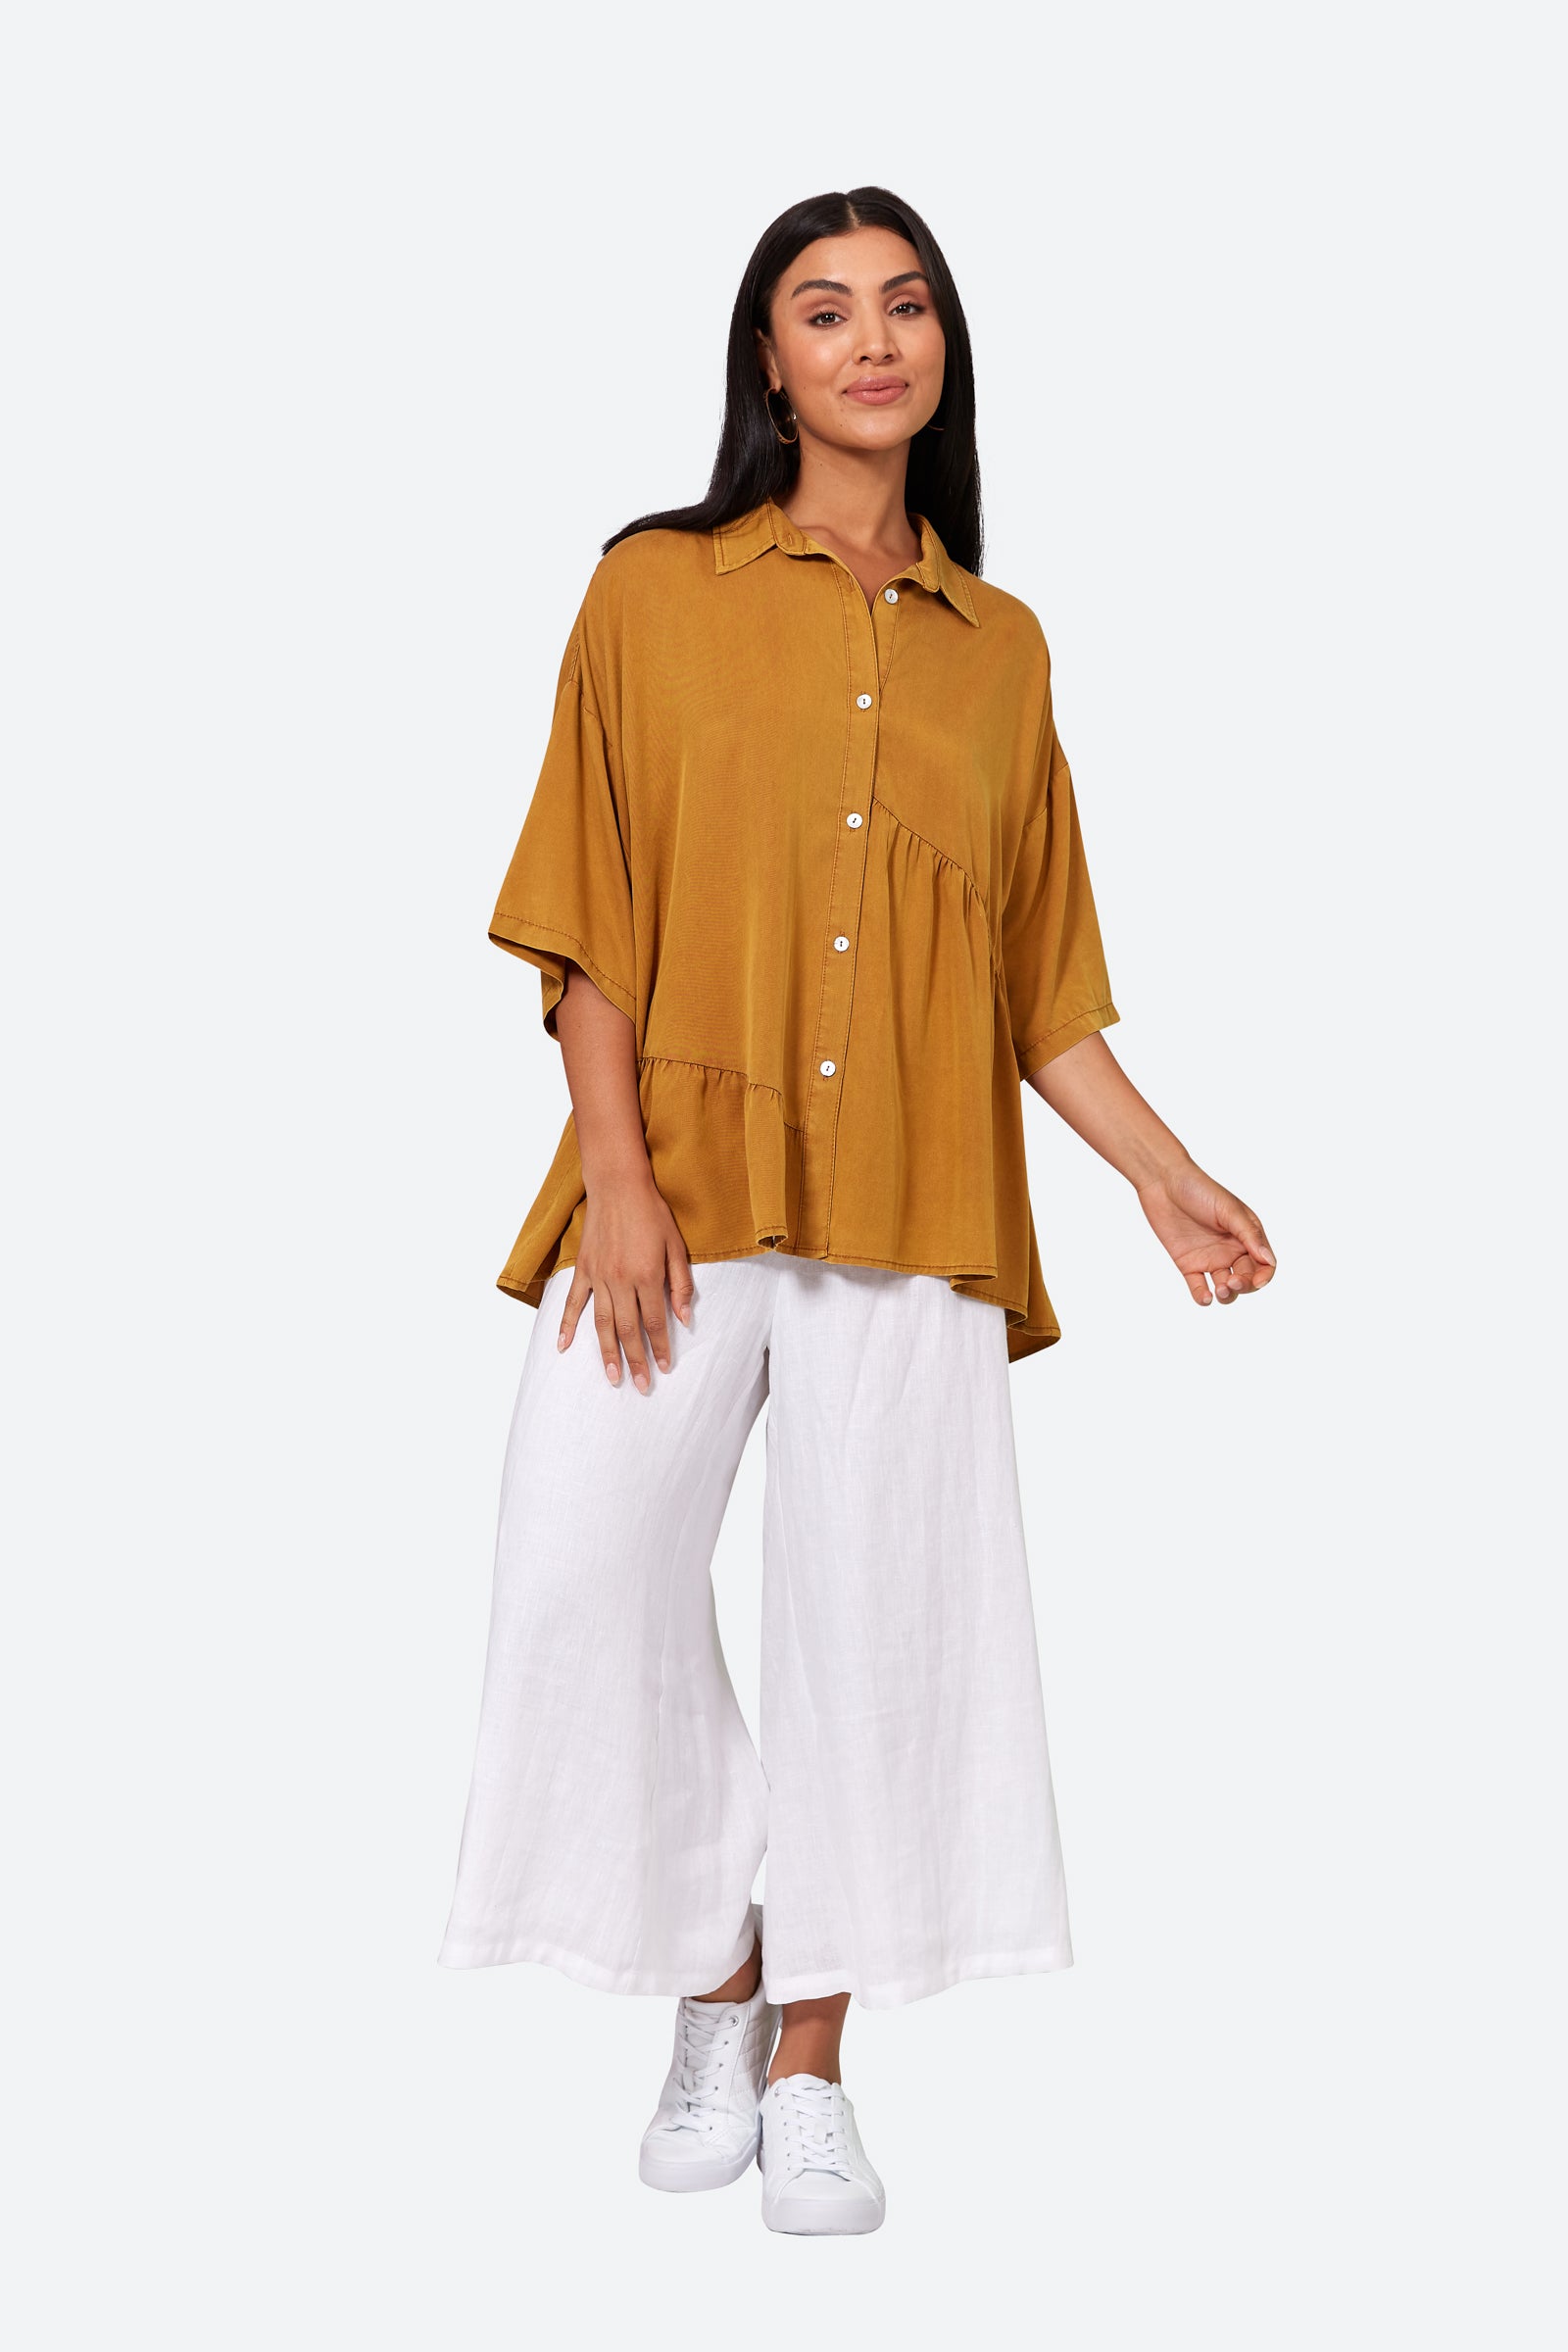 Elan Shirt - Honey - eb&ive Clothing - Shirt One Size